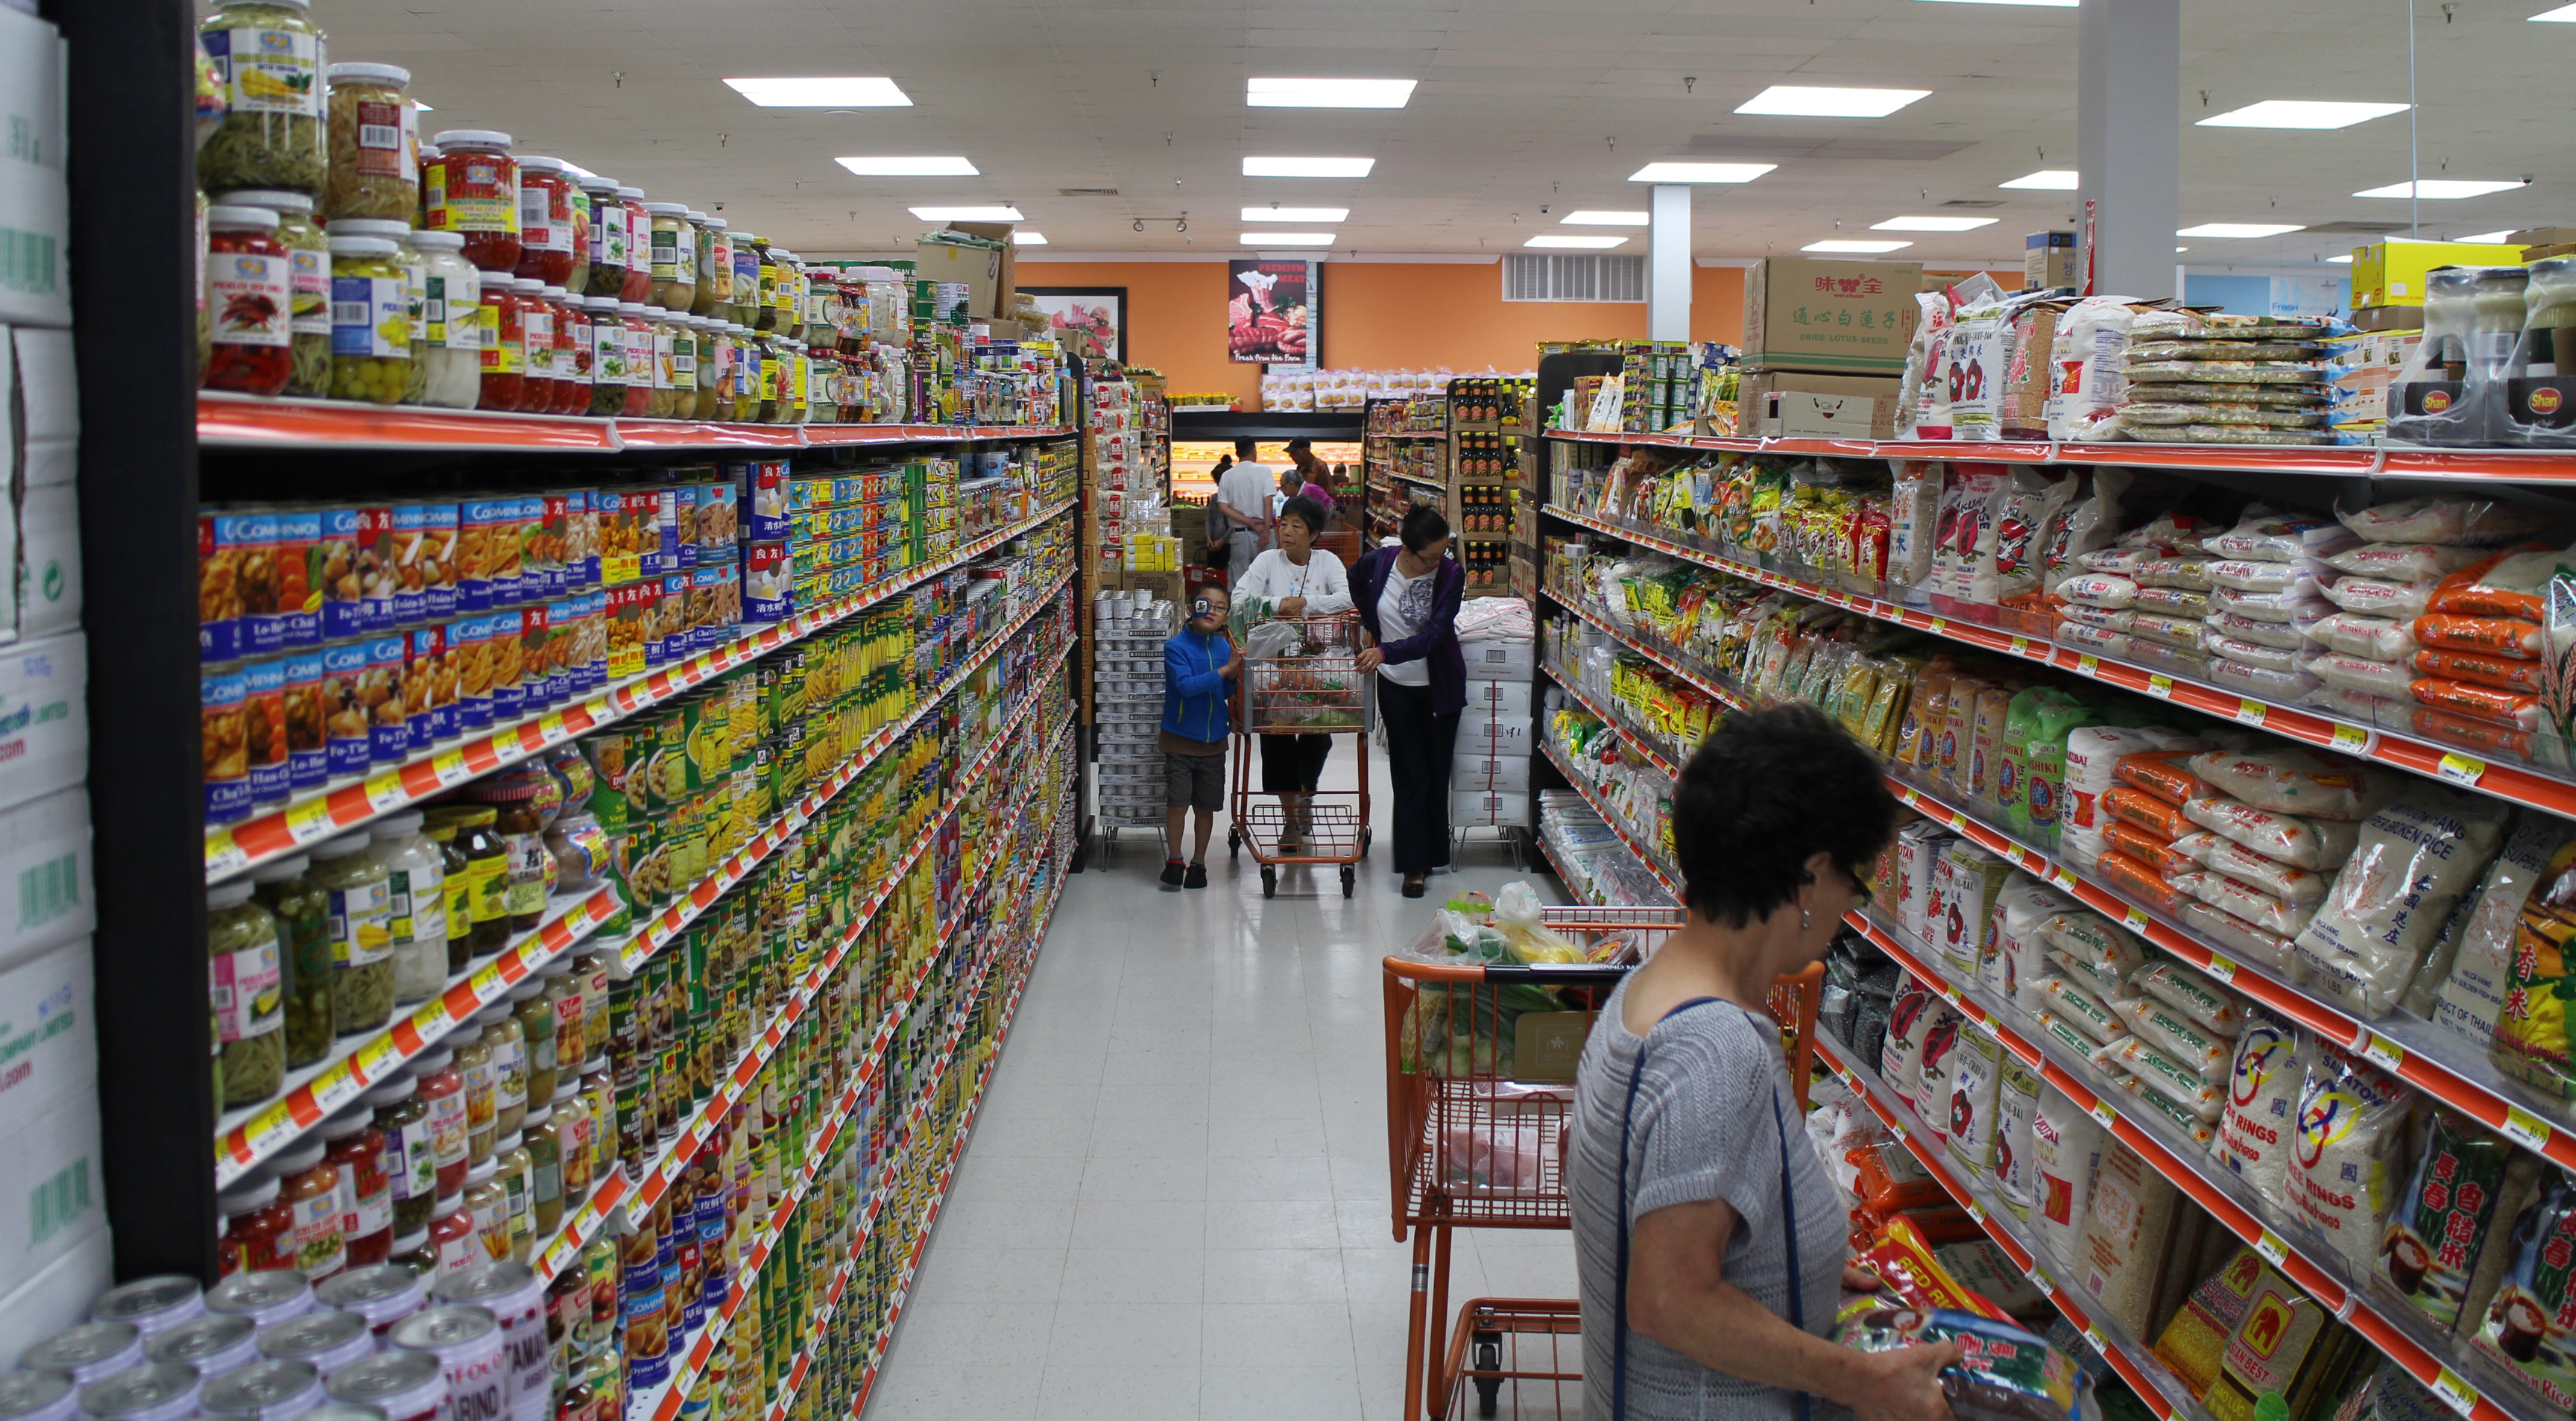 International grocer opens first local store - Richmond BizSense